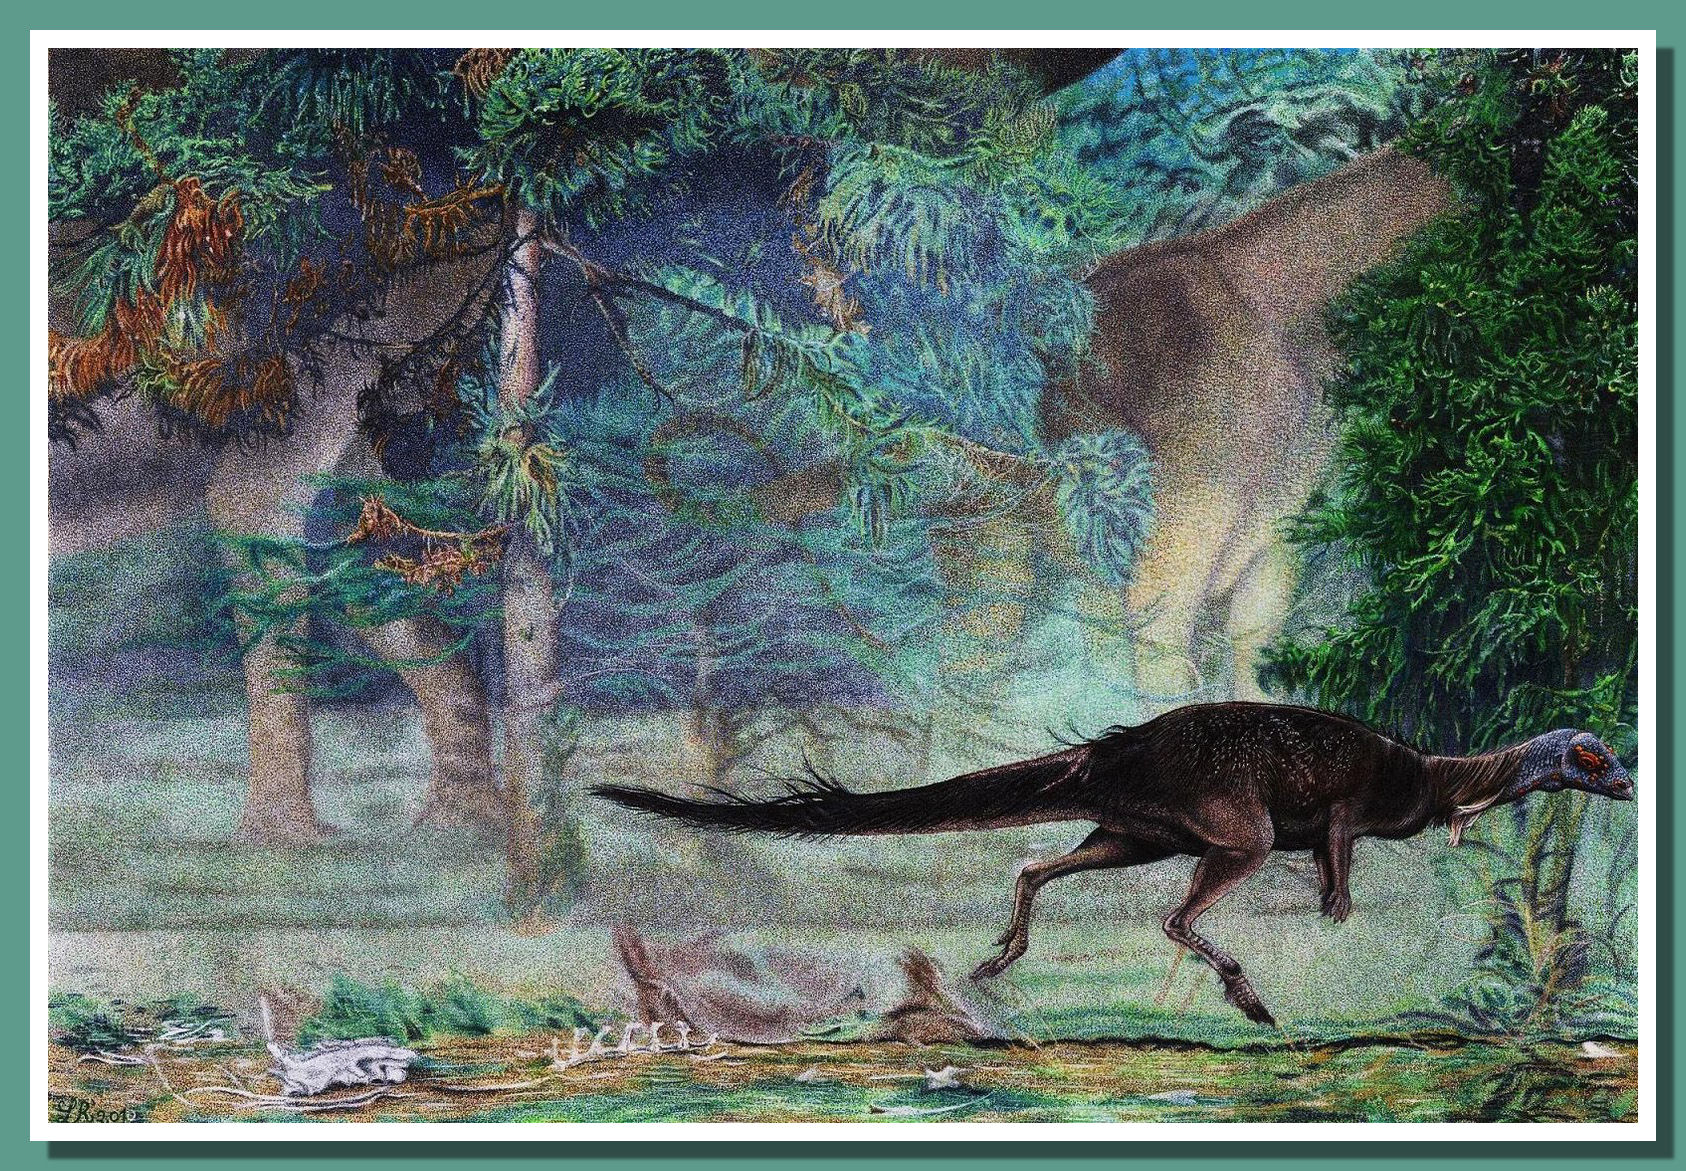 Macrogryphosaurus gondwanicus by Loana Riboli